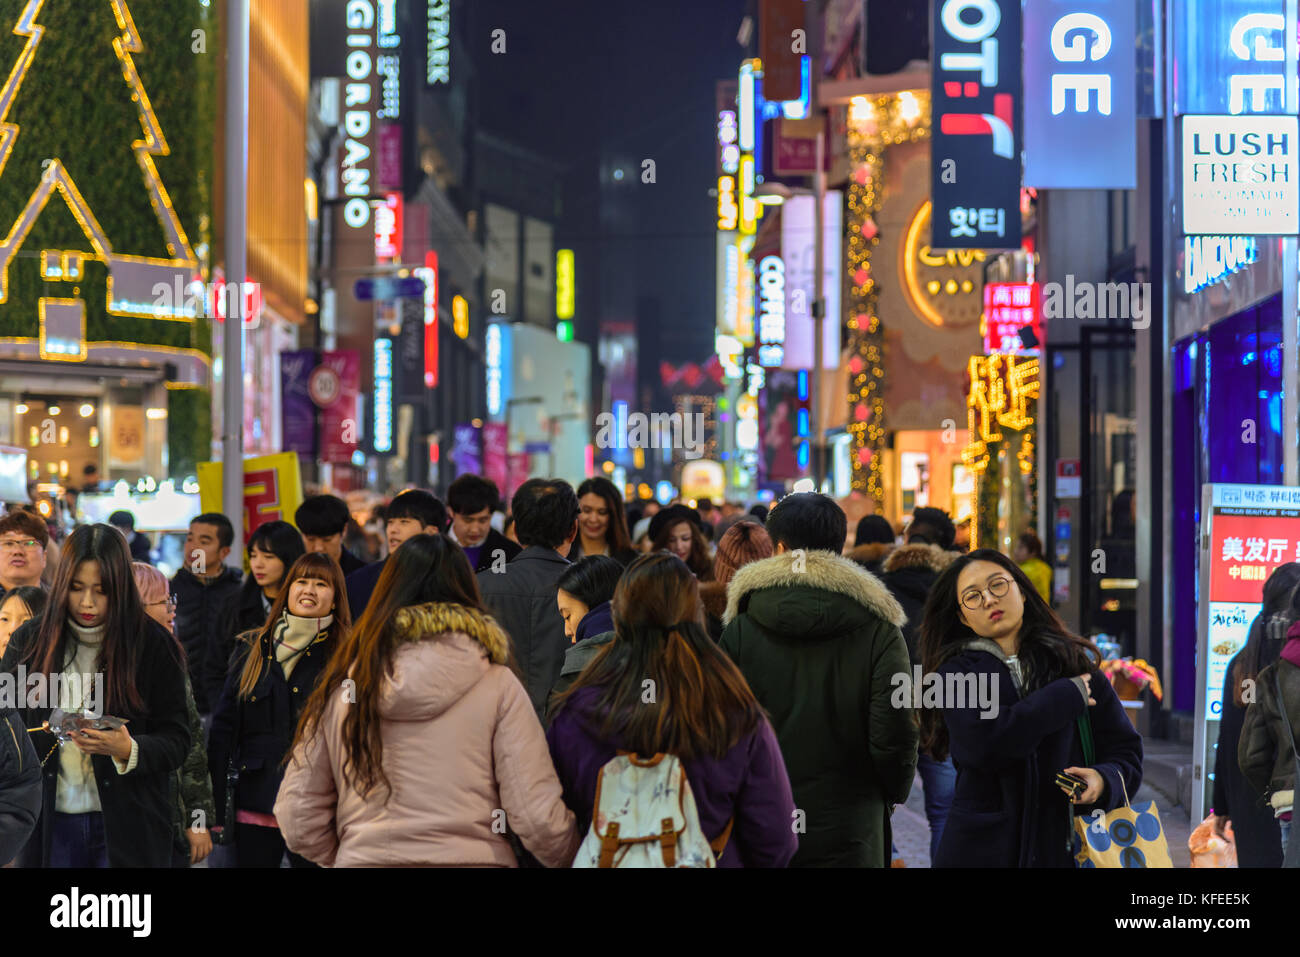 Séoul, Corée du Sud - 31 décembre 2016 - la foule de personnes qui anime l'une des principales rues de Séoul pendant la saison de vacances Banque D'Images